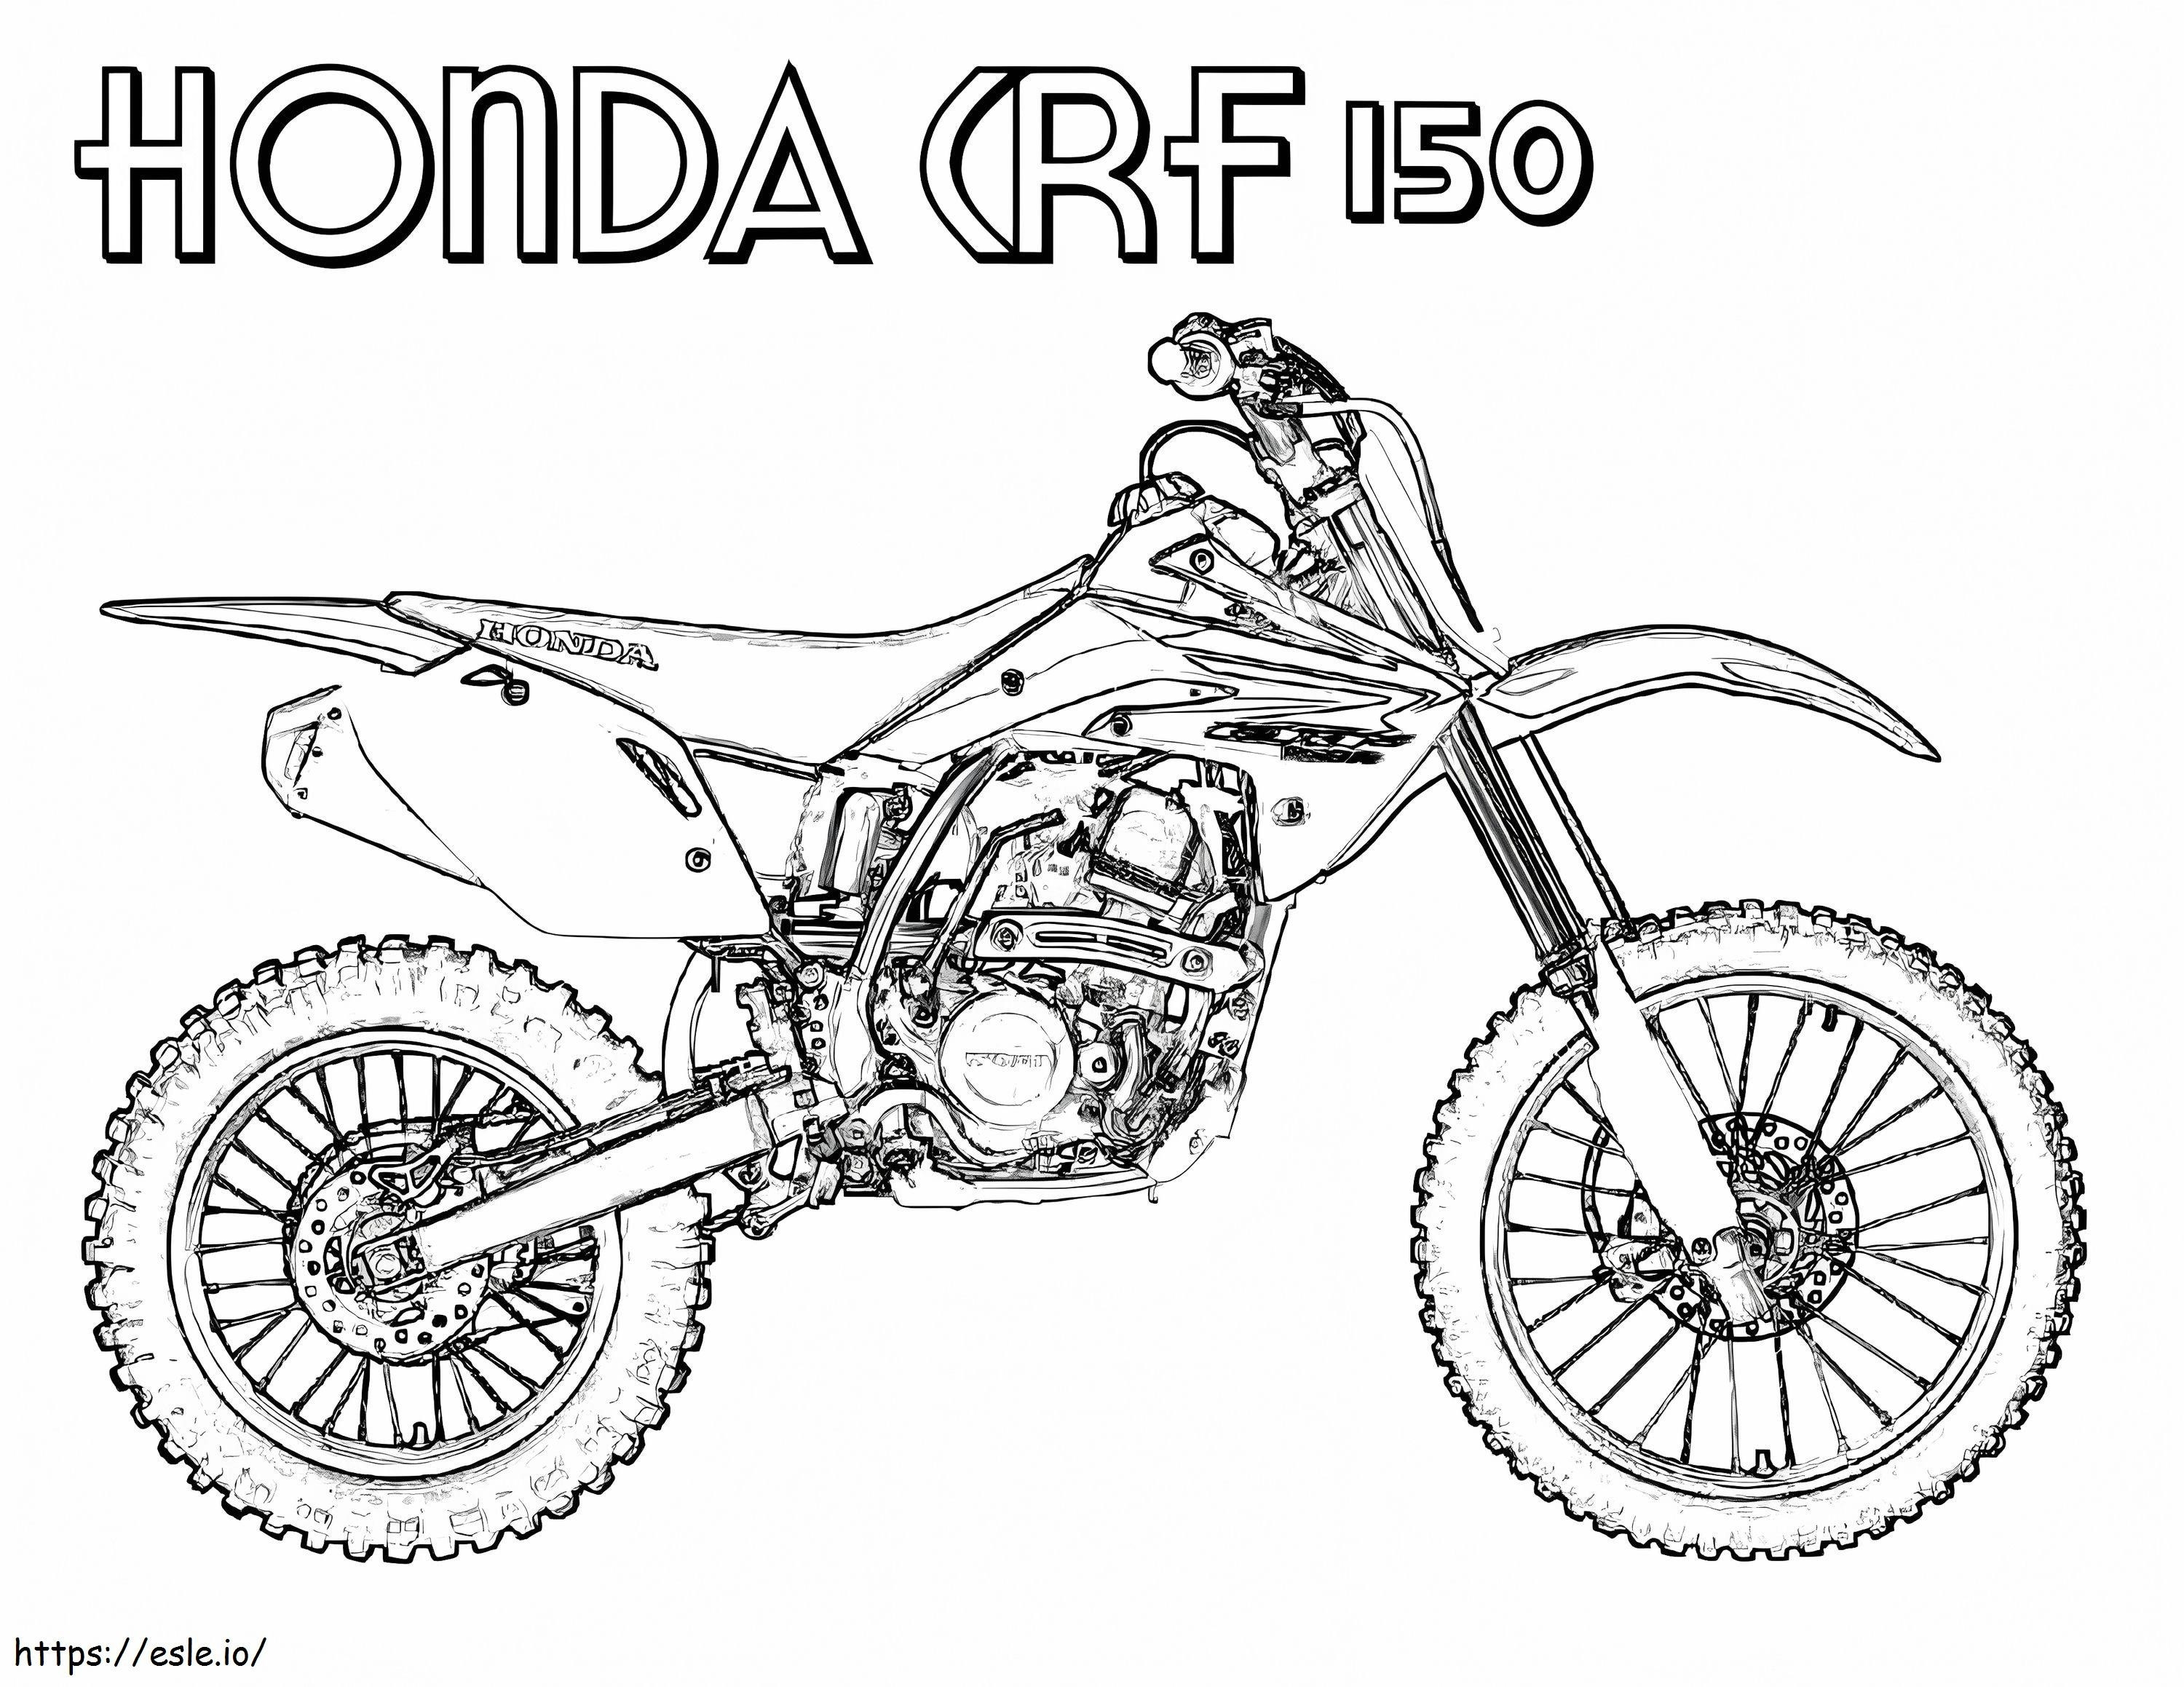 Honda CRF 150 Dirt Bike coloring page